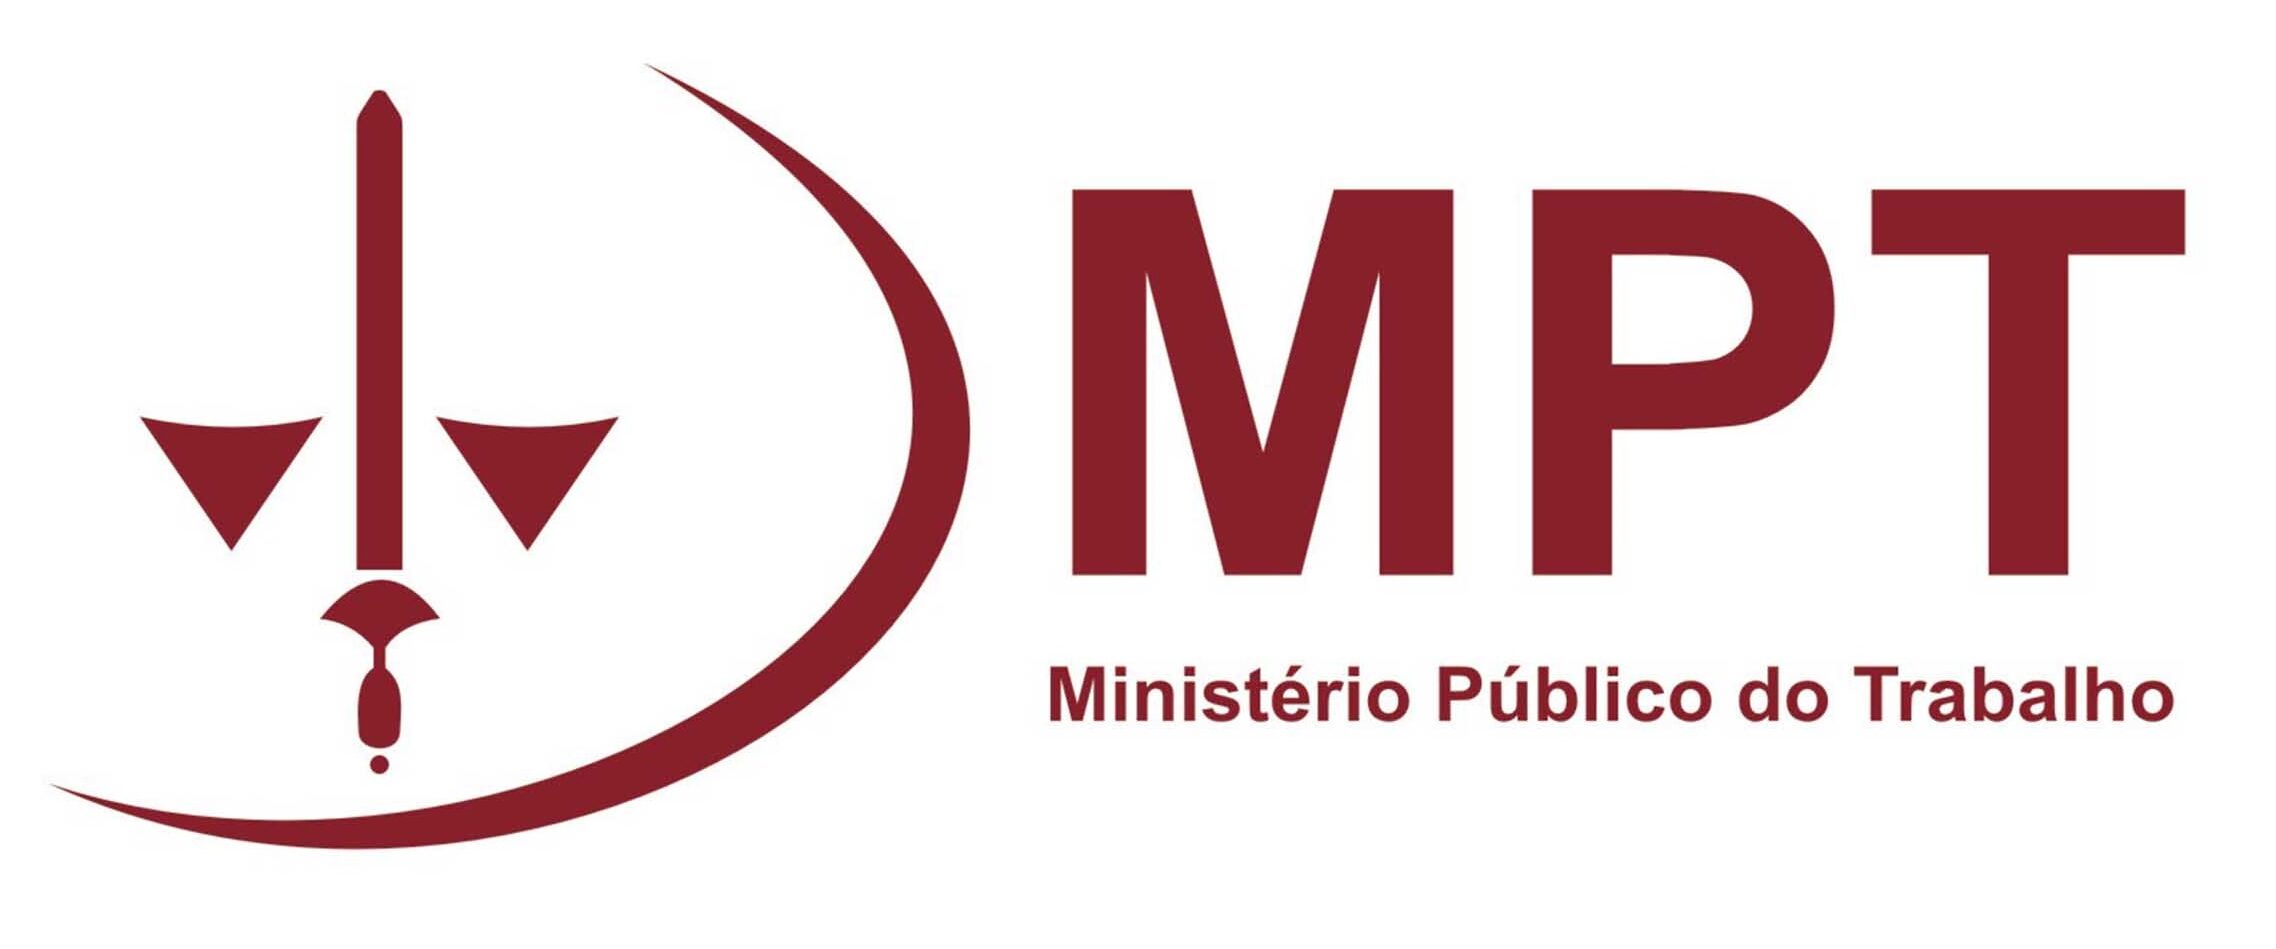 Logo do MPT (Ministério Público do Trabalho)